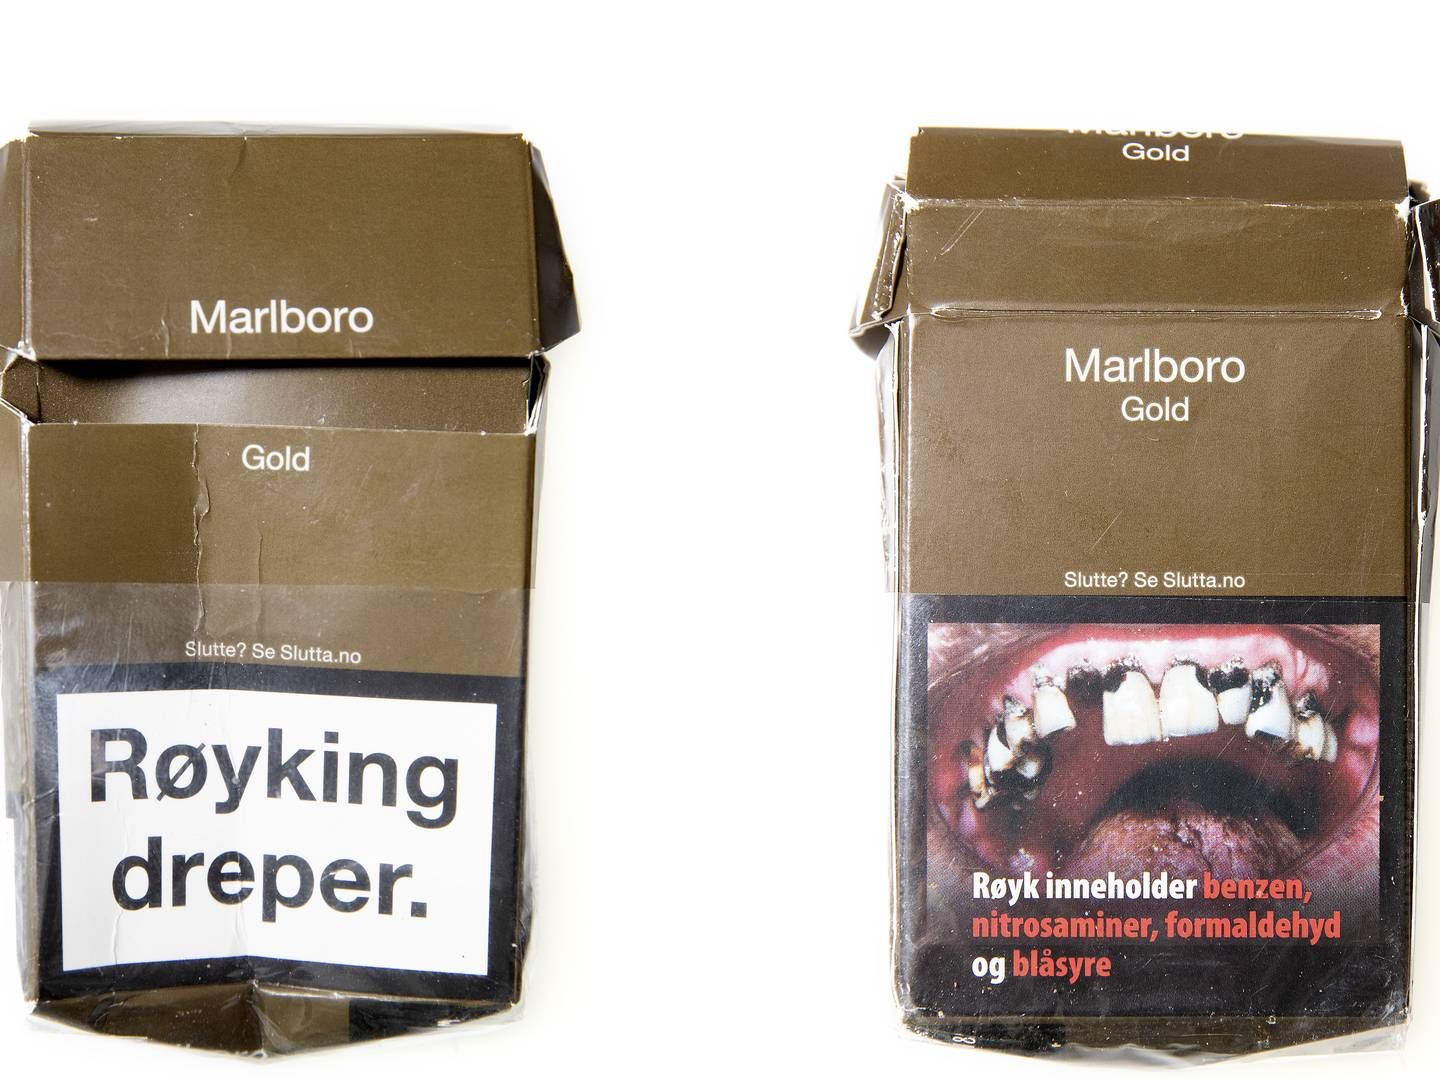 Inspirationen til de neutrale og brune cigaretpakker er hentet fra Norge, hvor de har set ud som på billedet siden 2019. | Foto: Peter Hove Olesen